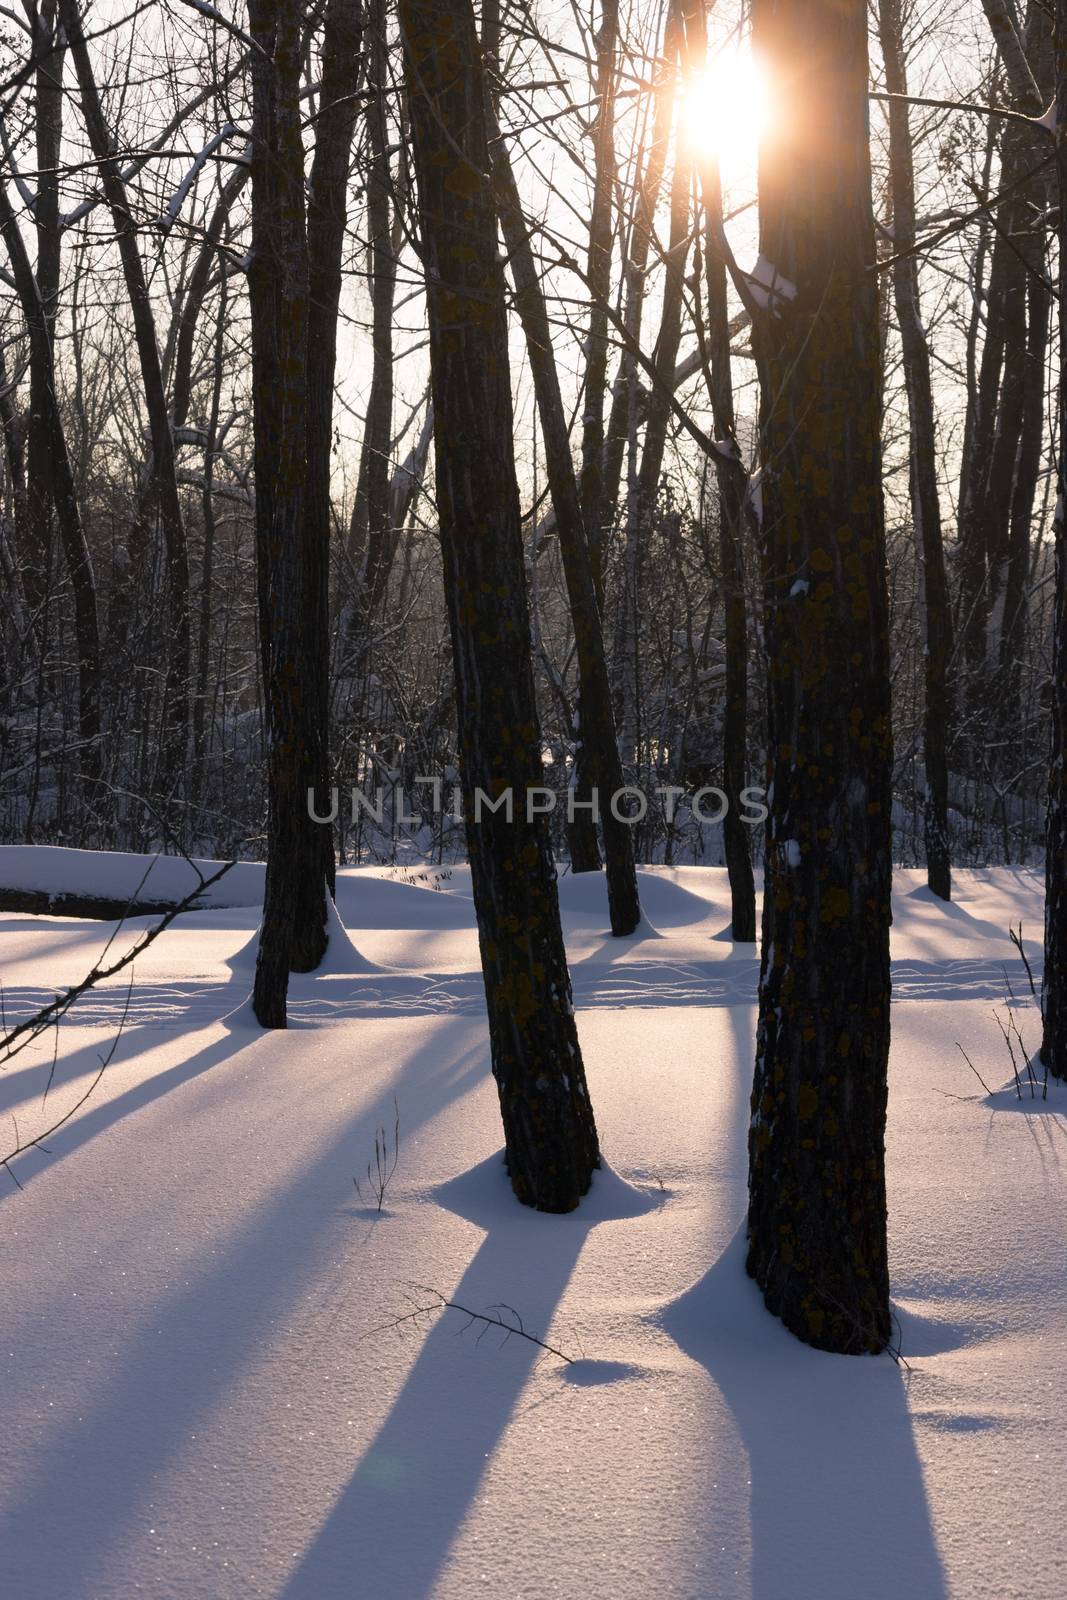 sun light through the trees, winter sunset